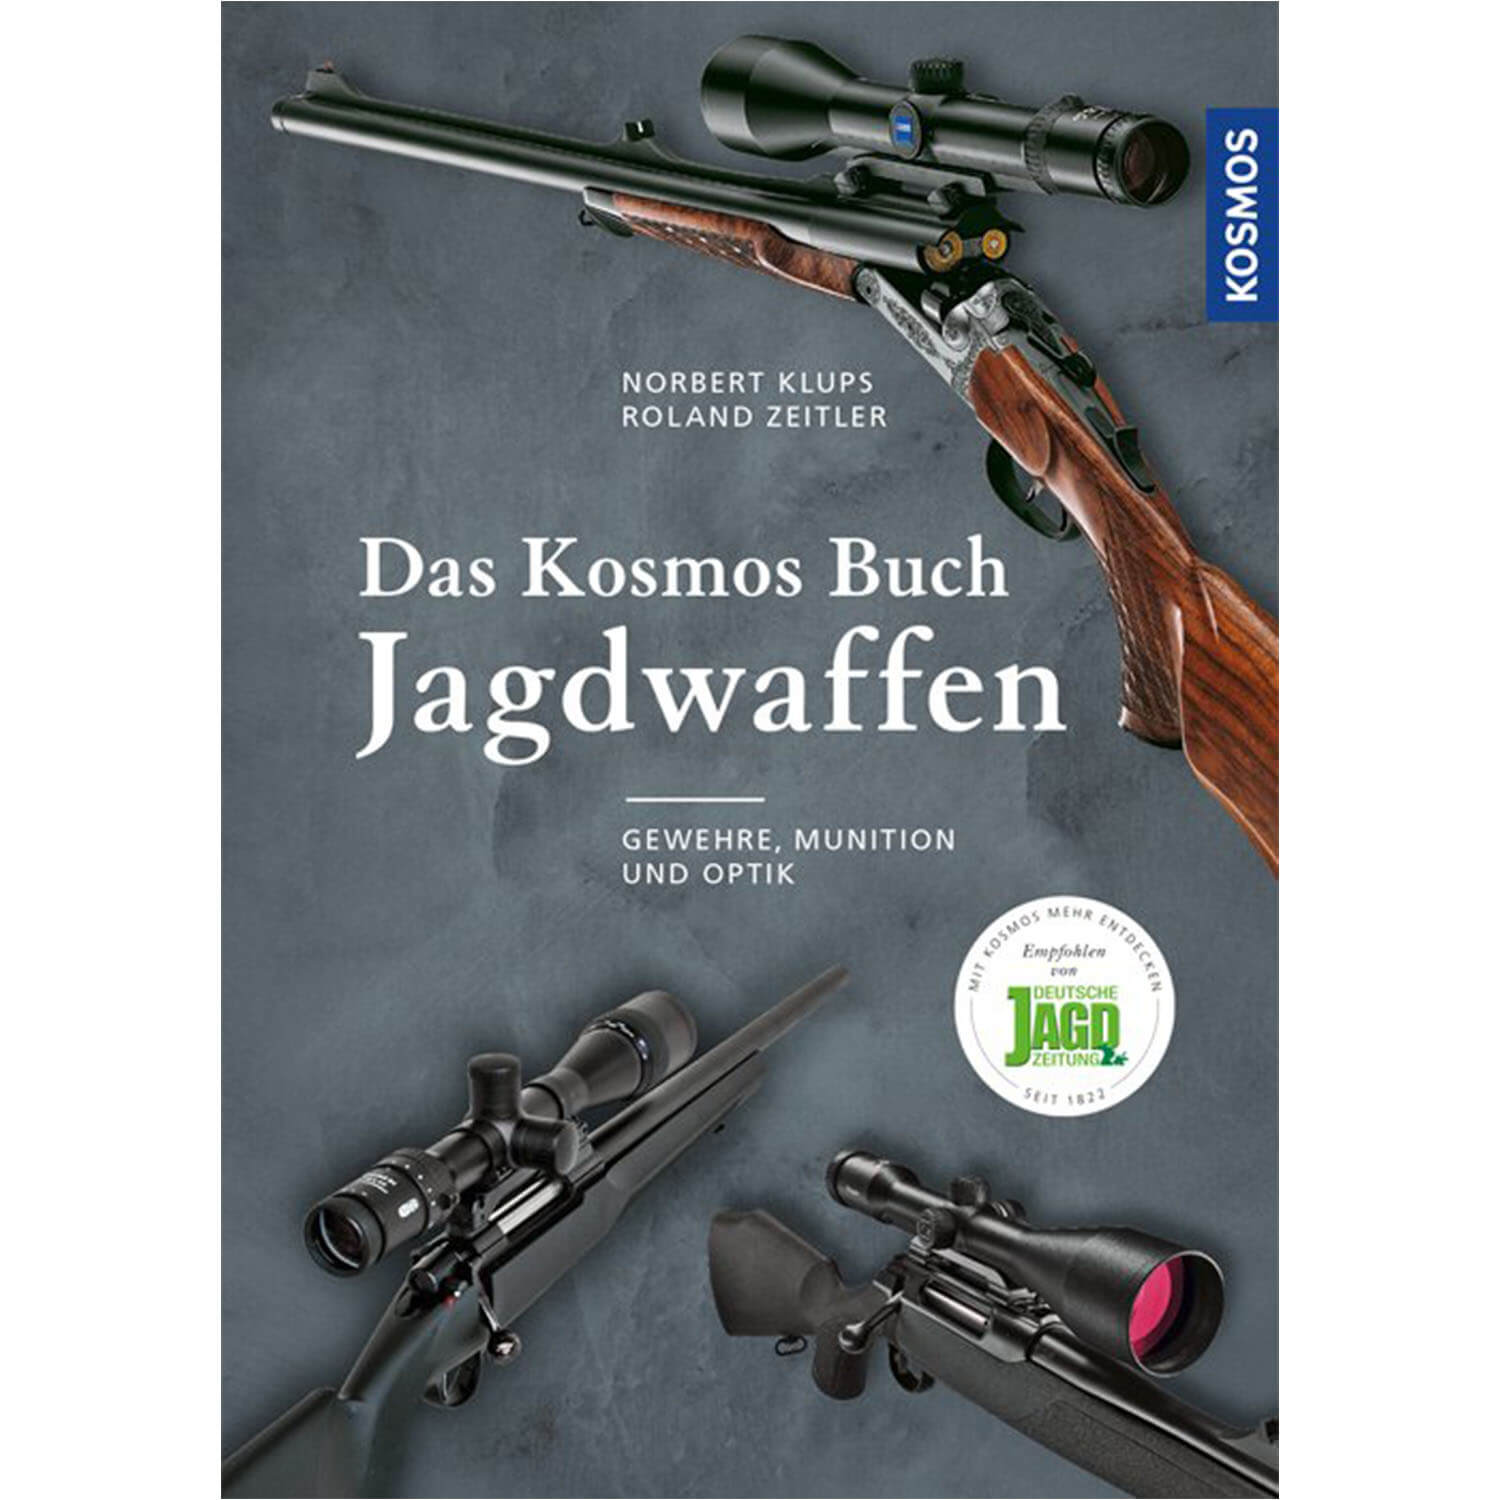 Das Kosmos Buch Jagdwaffen - Buch - Klups & Zeitler - Jagdbücher